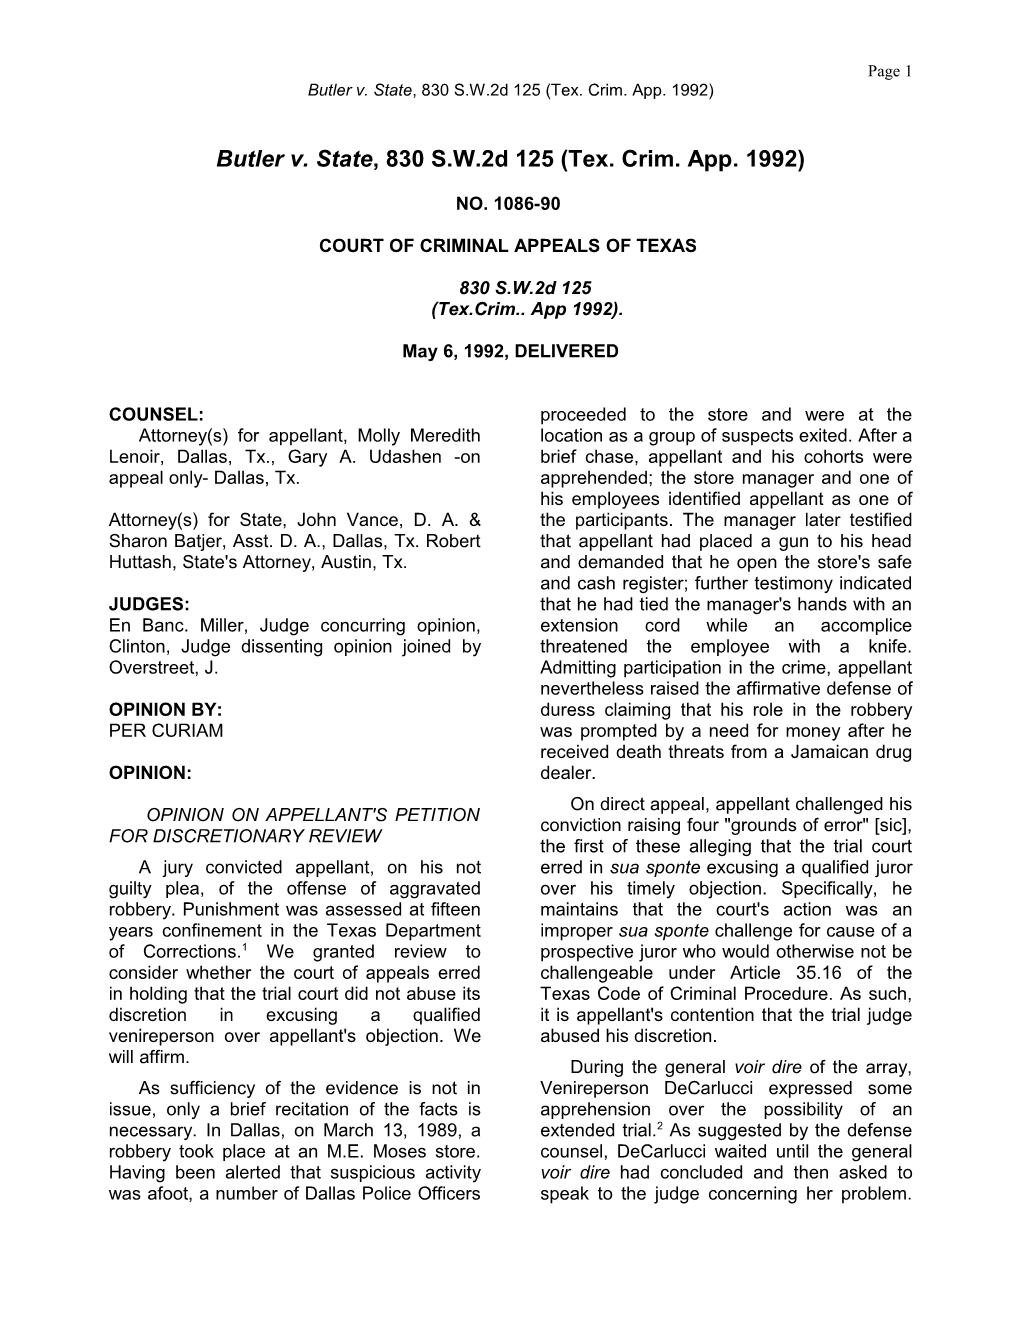 Butler V. State, 830 S.W.2D 125 (Tex. Crim. App. 1992)